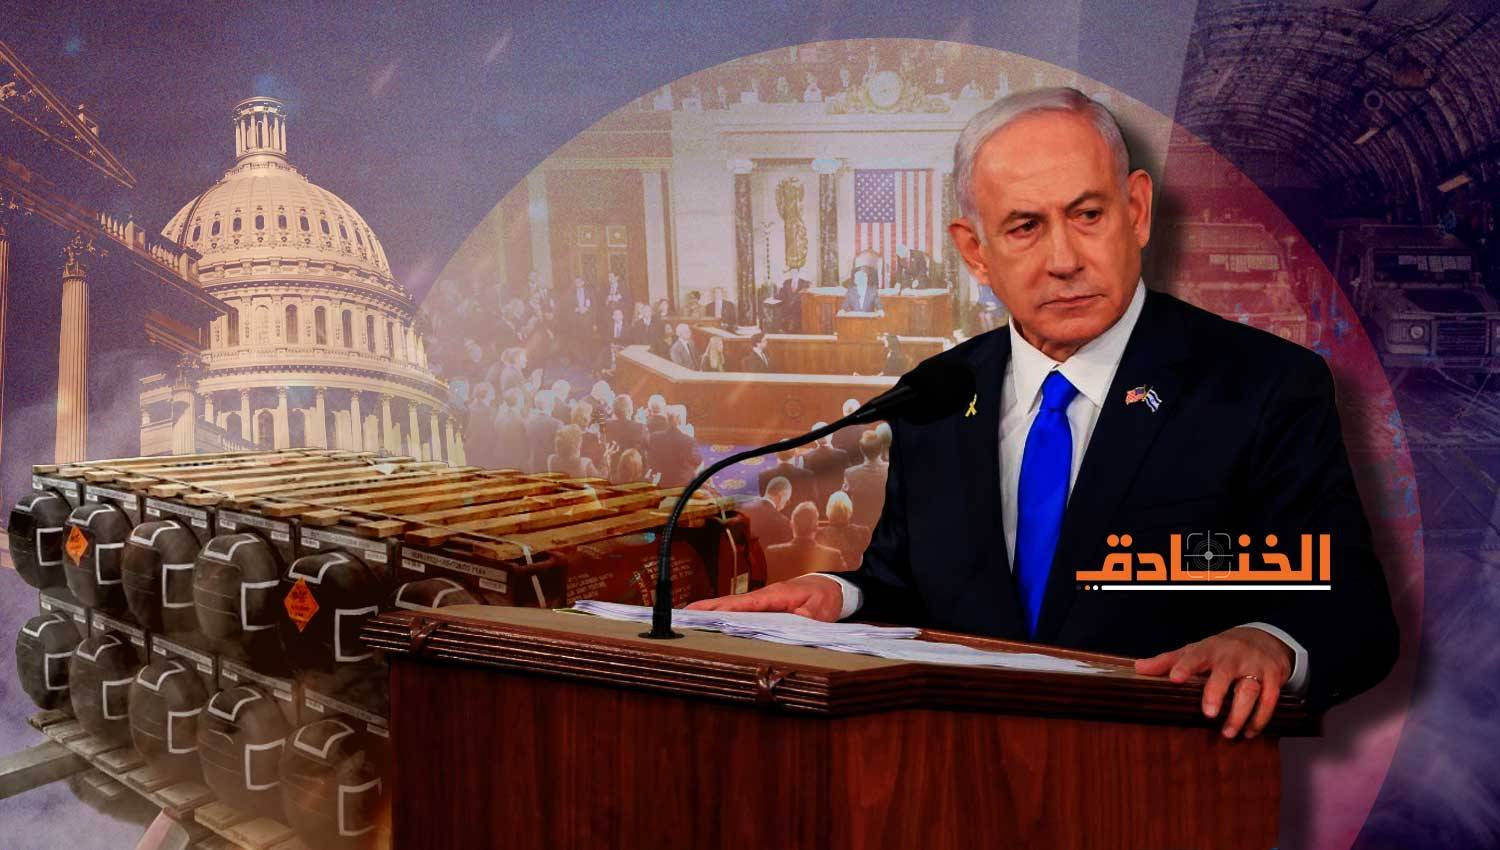 بوليتيكو: "إسرائيل" تطلب من الكونغرس أسلحة وسط قلق من حرب مع حزب الله